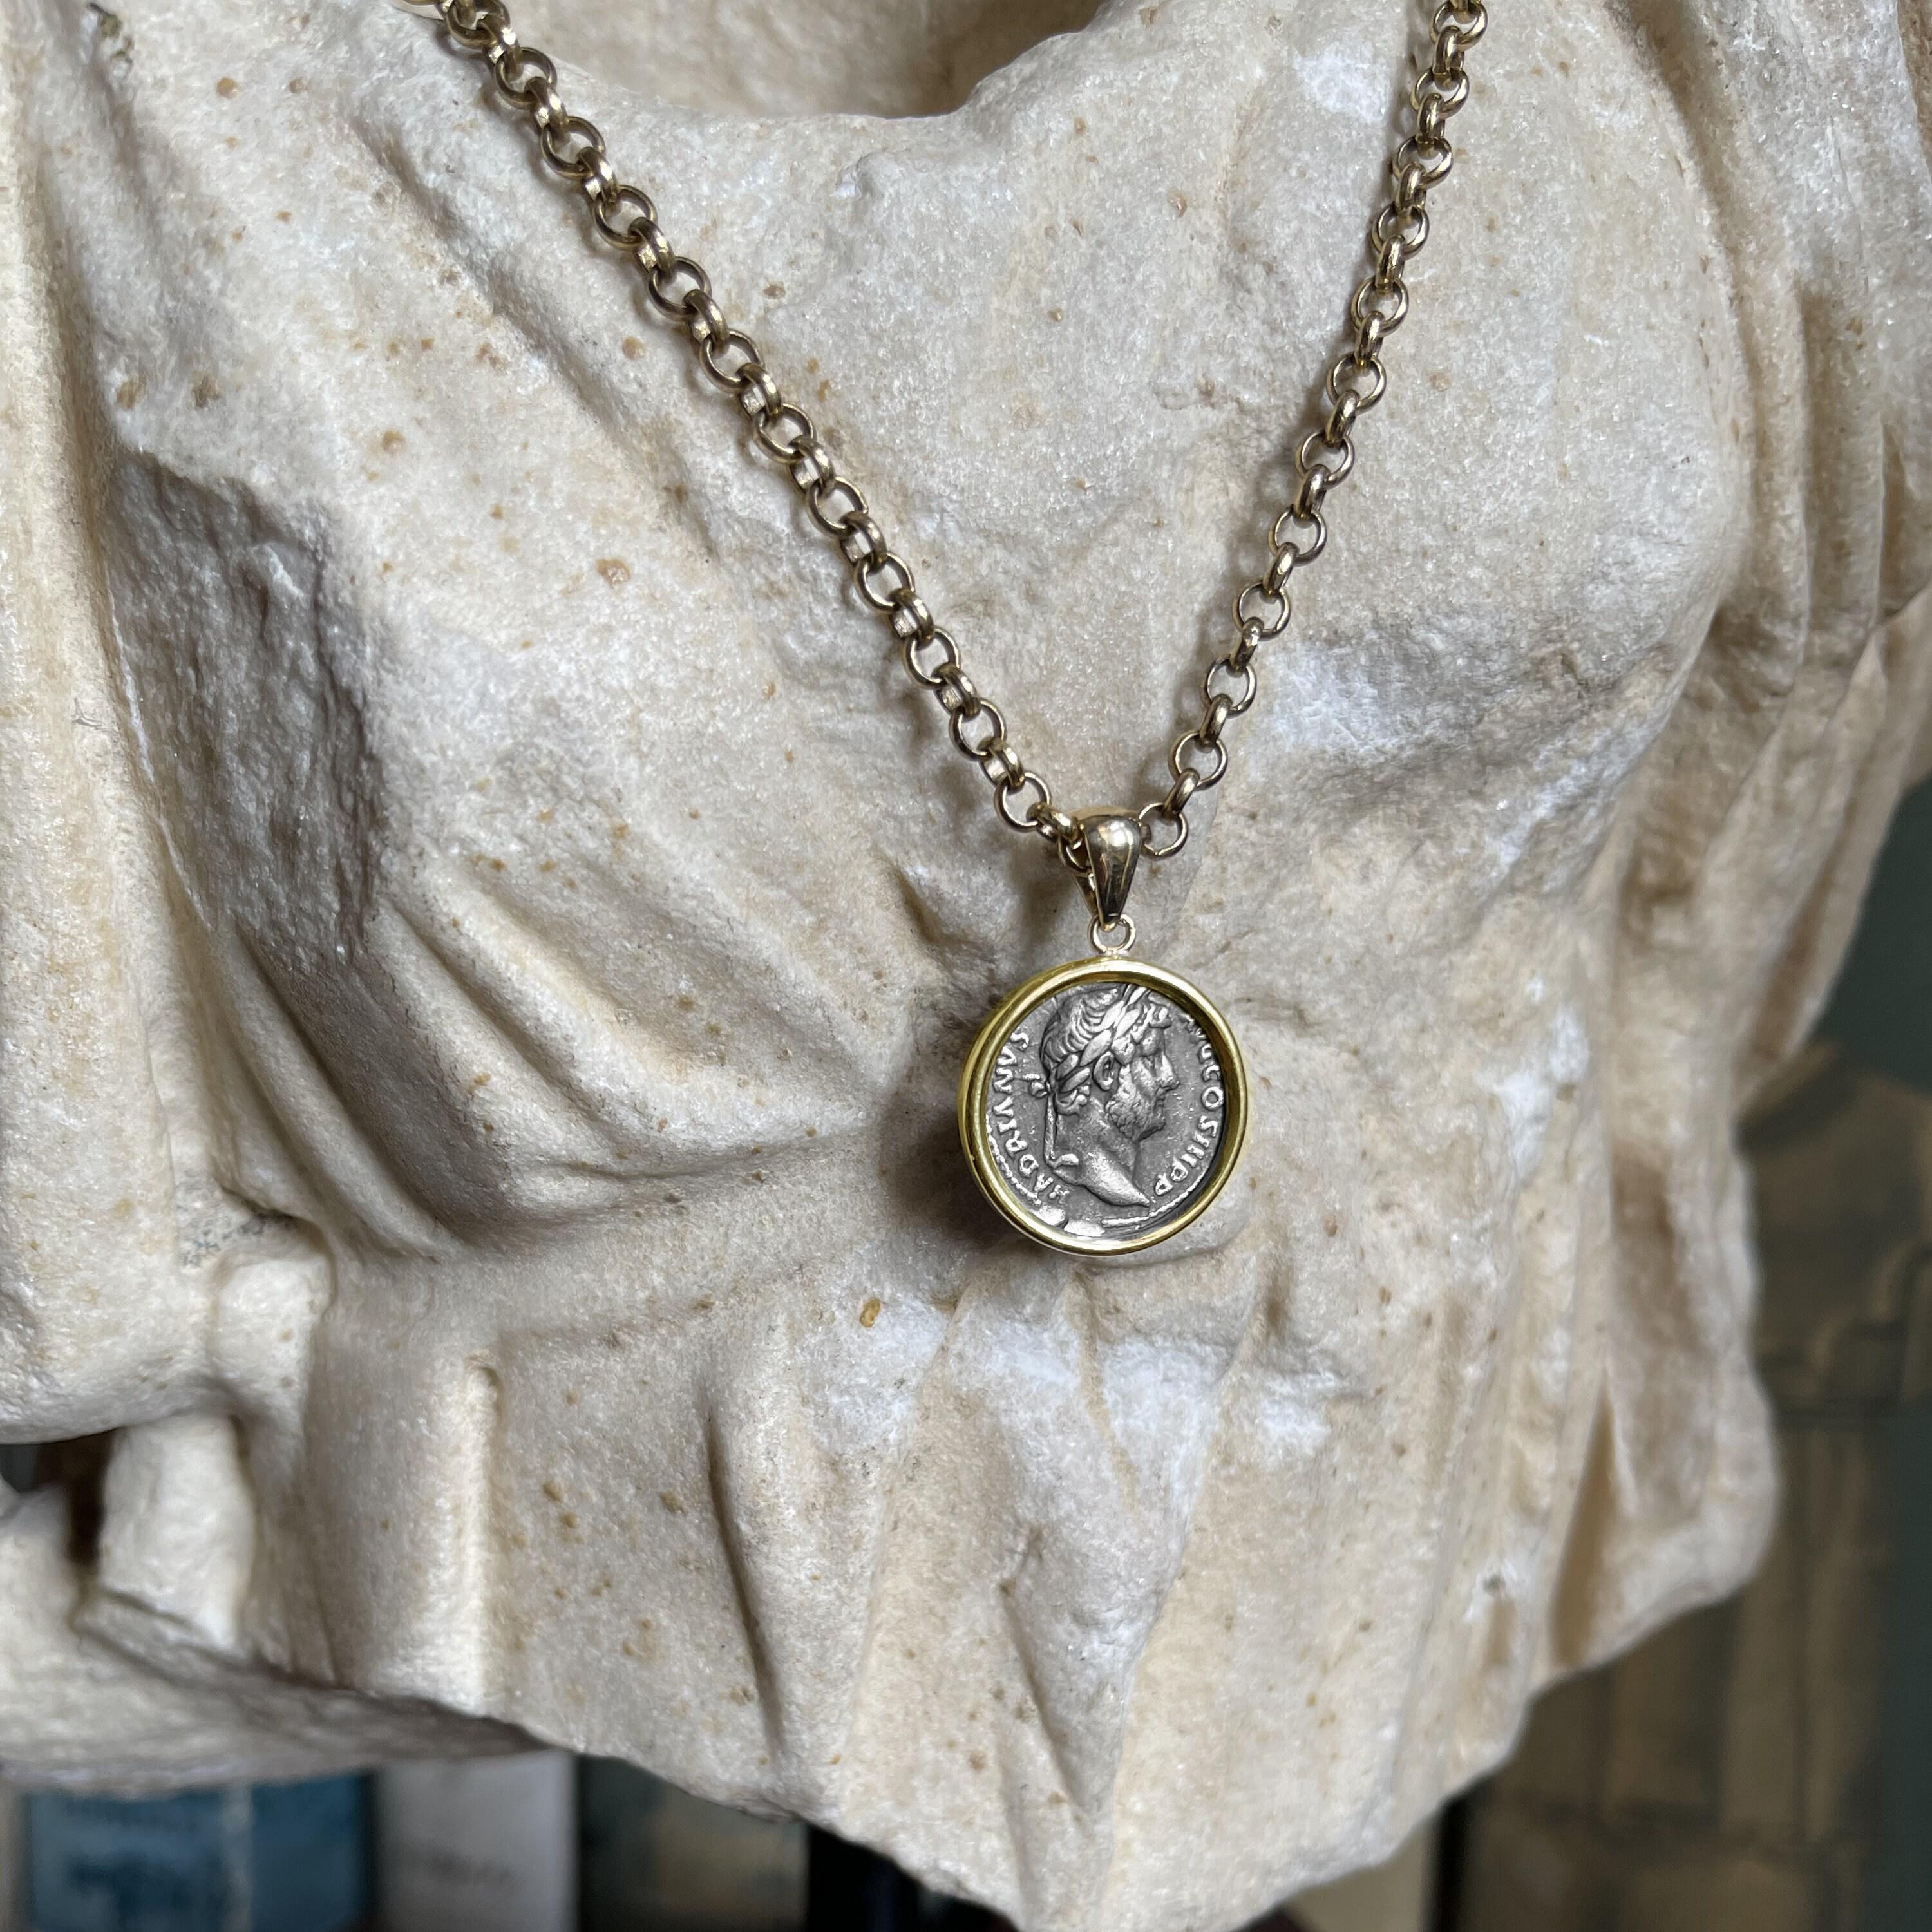 Dieser exquisite Anhänger aus 18-karätigem Gold zeigt eine authentische römische Münze aus dem 2. Jahrhundert n. Chr., die auf der einen Seite Kaiser Hadrian und auf der anderen die sitzende Göttin Fortuna darstellt. Hadrian, der für seine